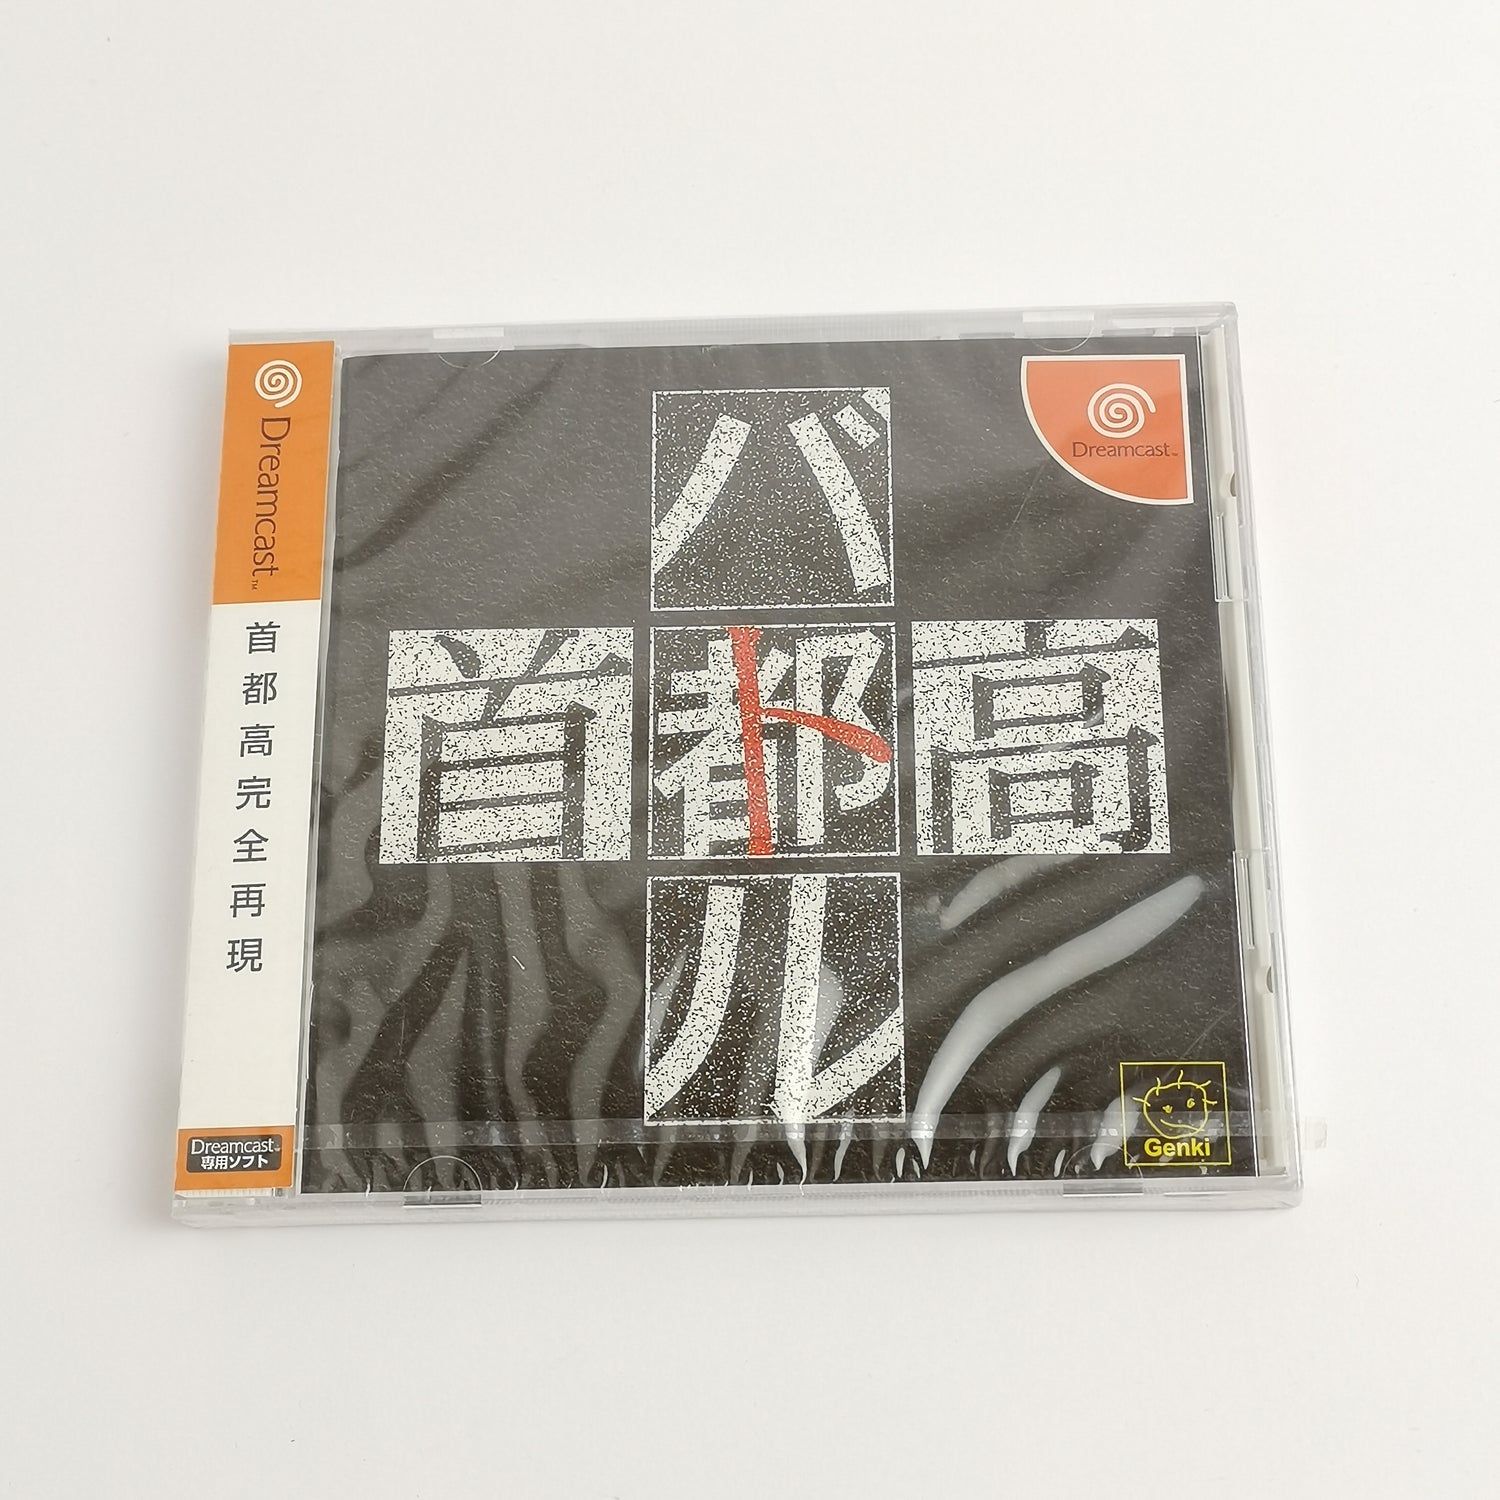 Japanese Sega Dreamcast game: Shutokou Battle | DC OVP - NEW NEW SEALED